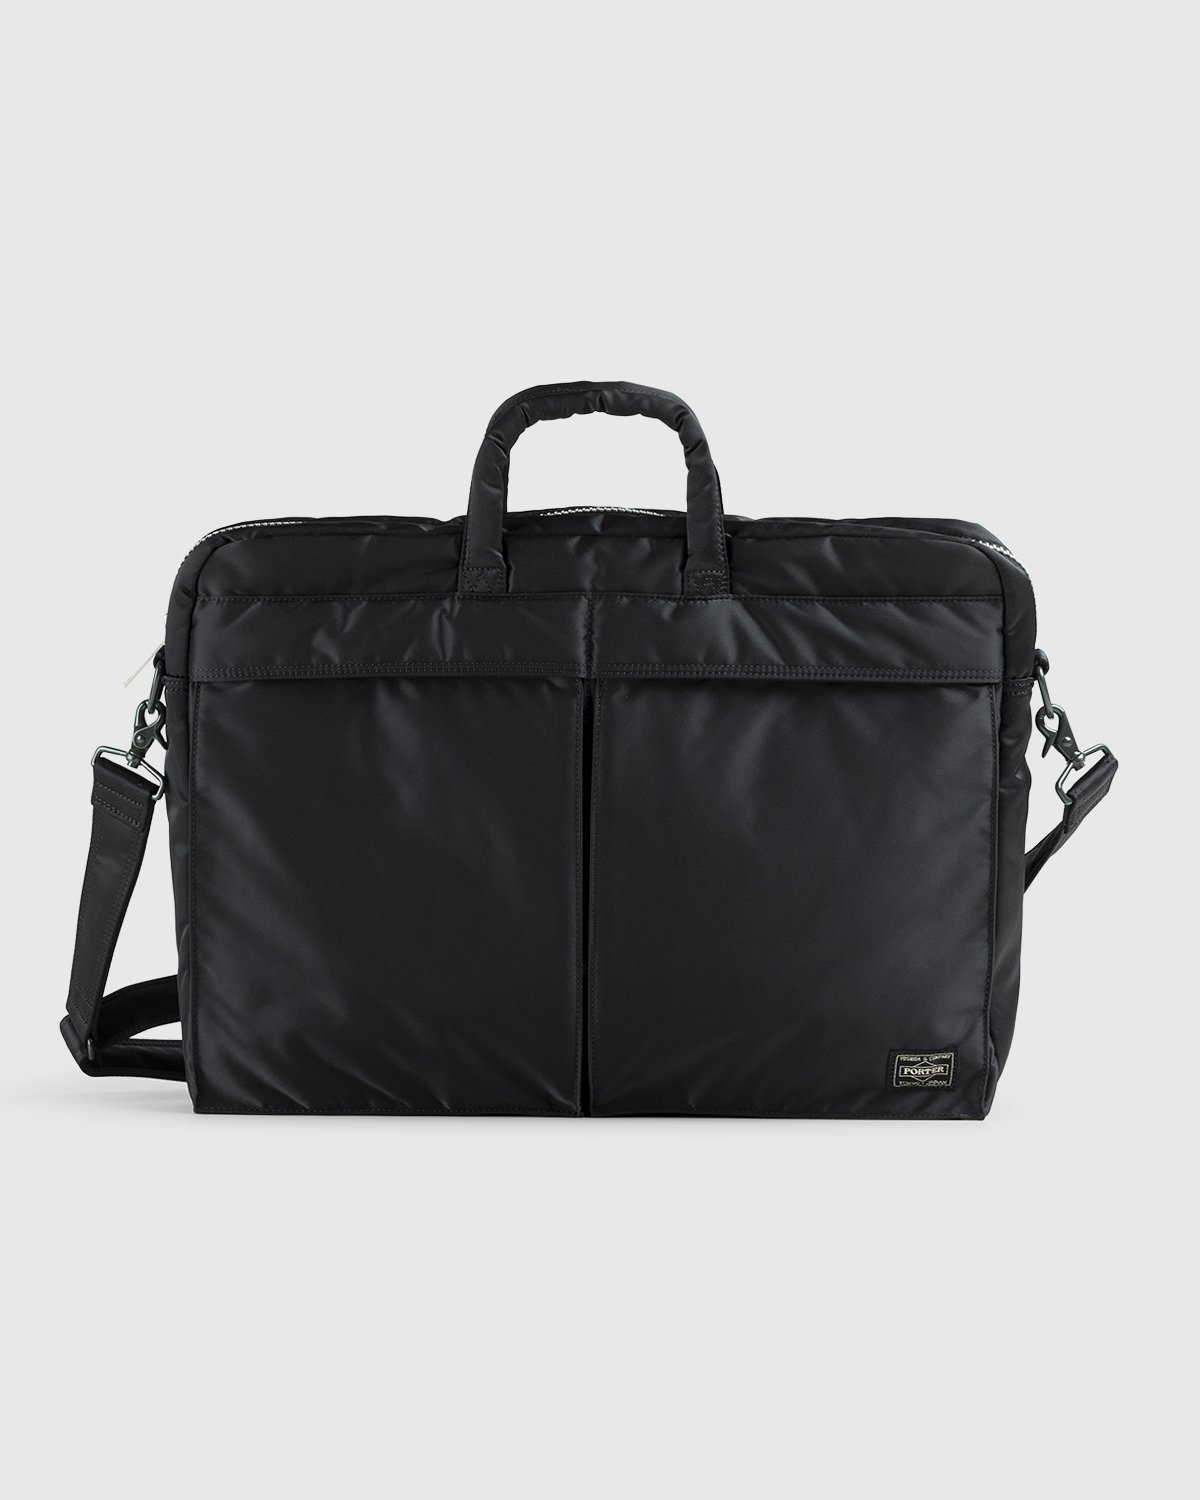 Porter-Yoshida & Co. - Tanker 2-Way Briefcase Black - Accessories - Black - Image 1